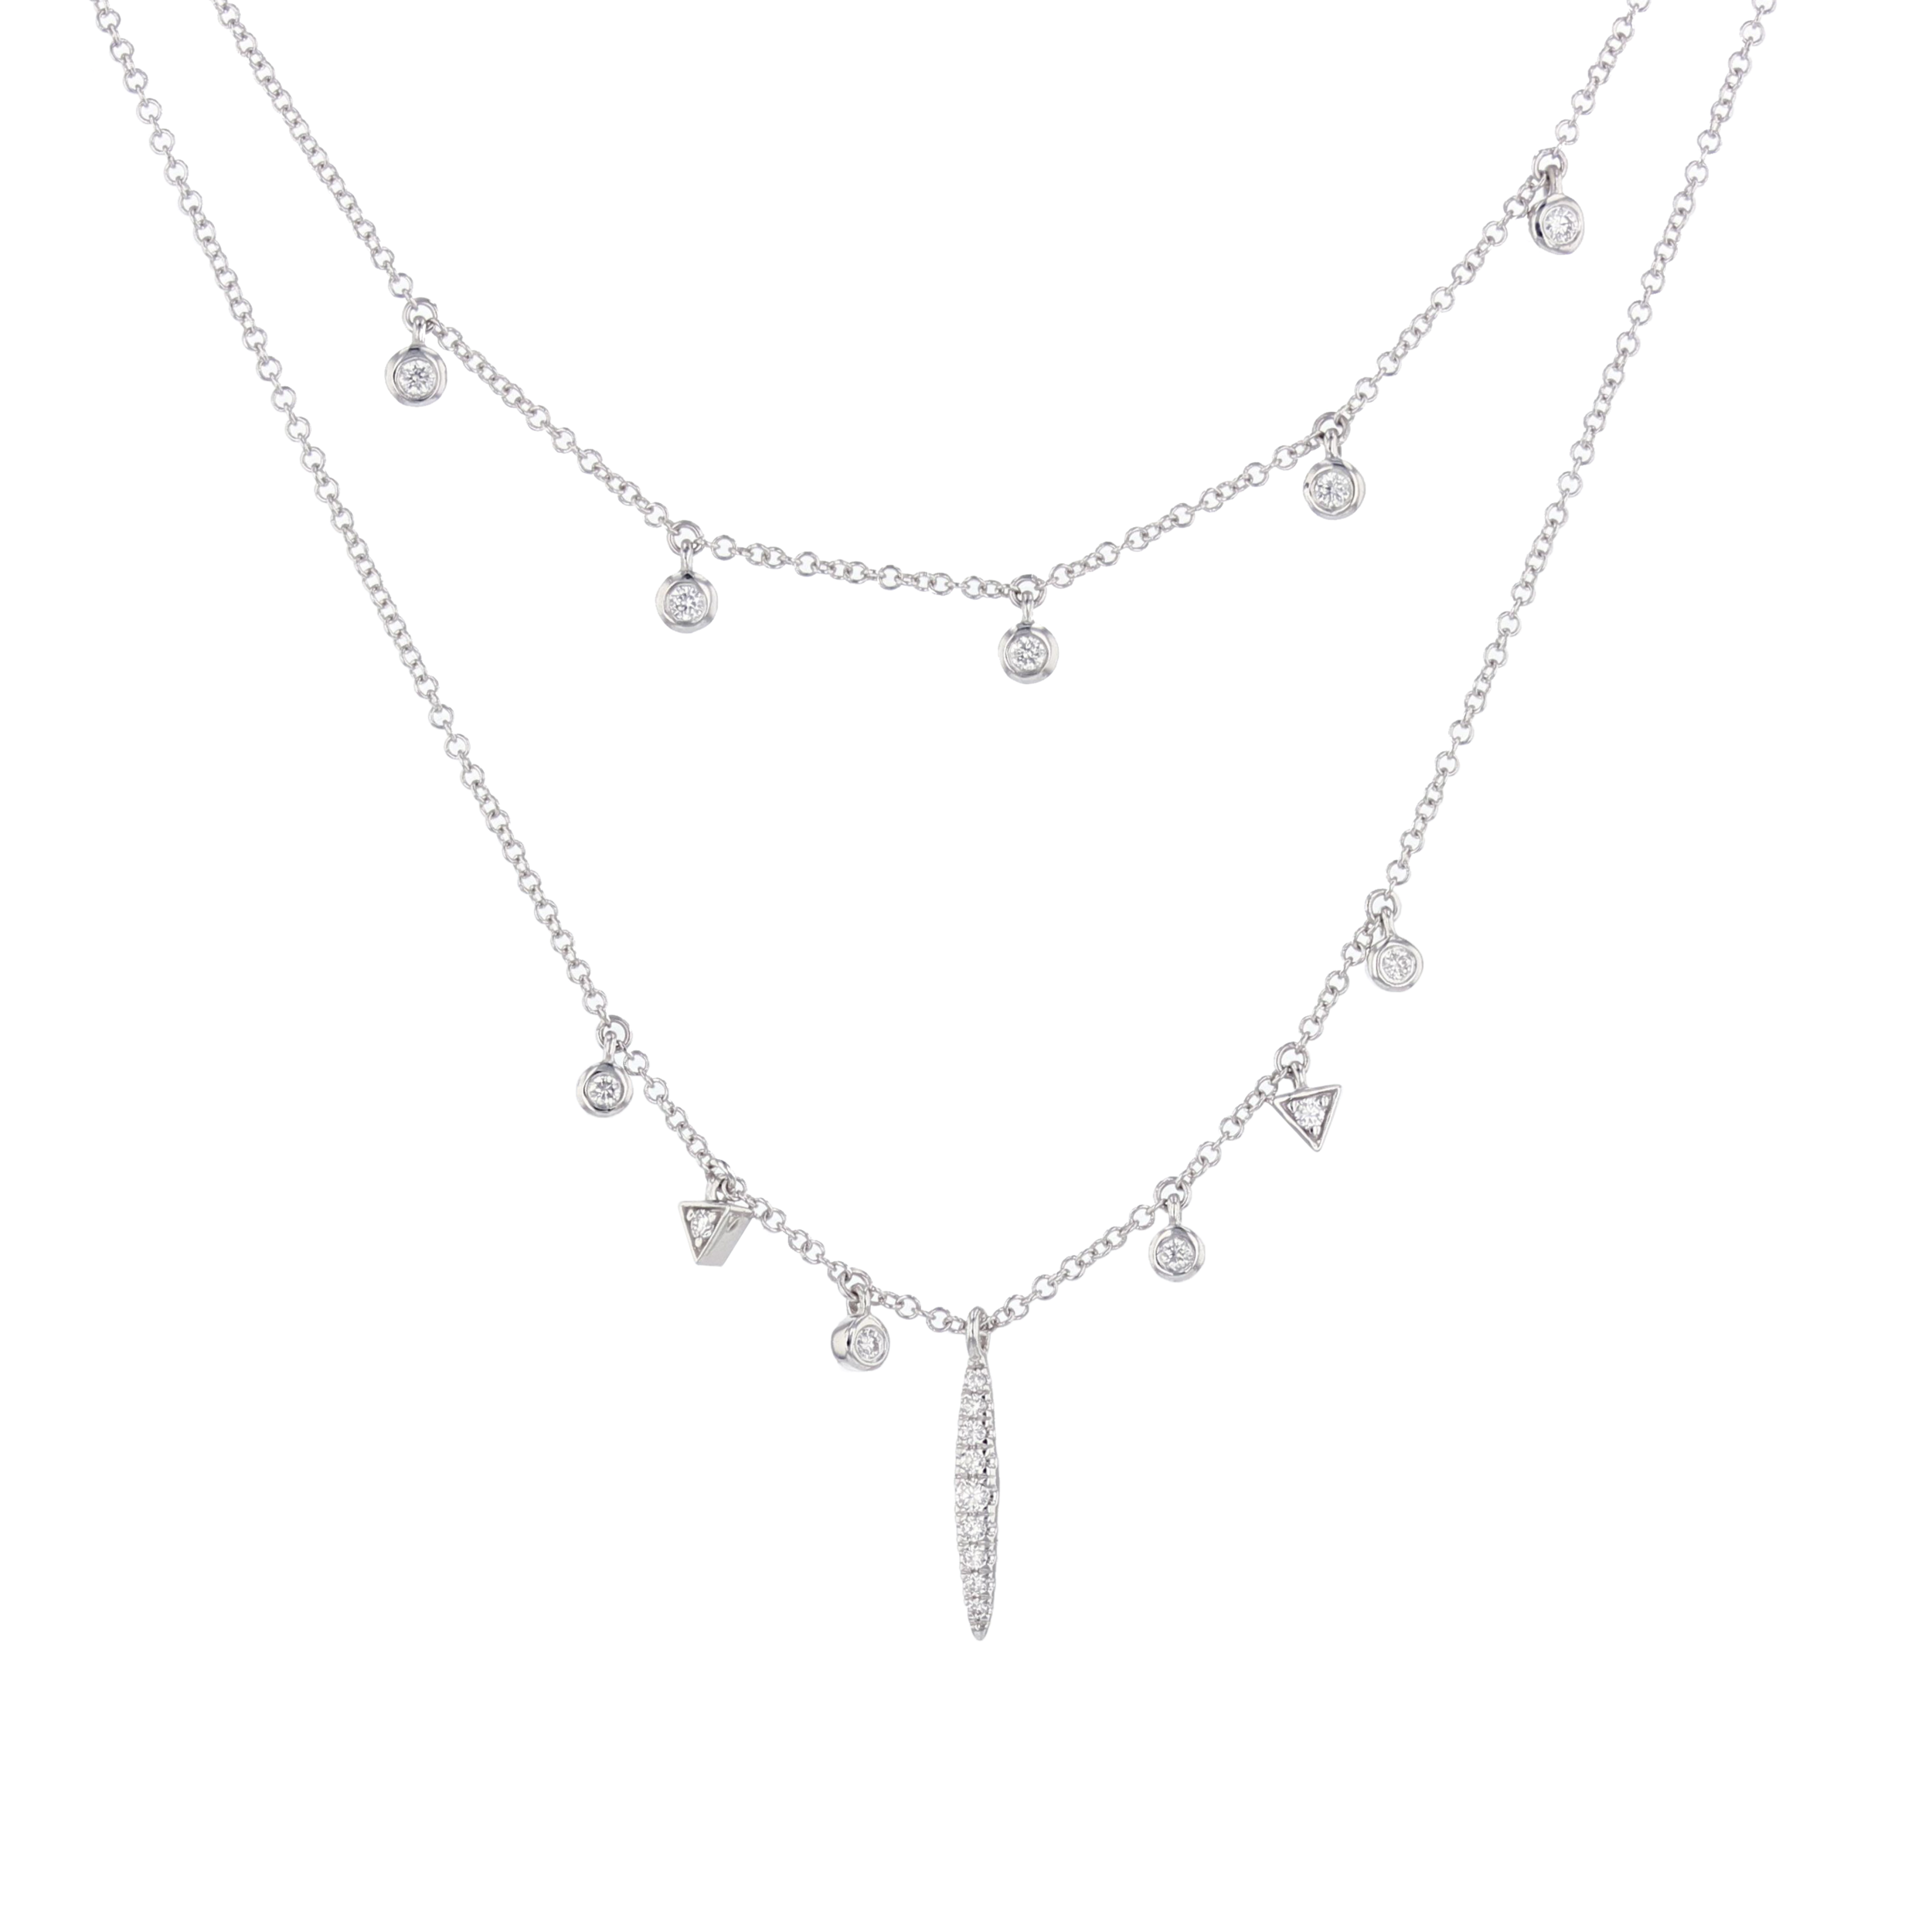 14 w/g Diamond Charm necklace. $1595